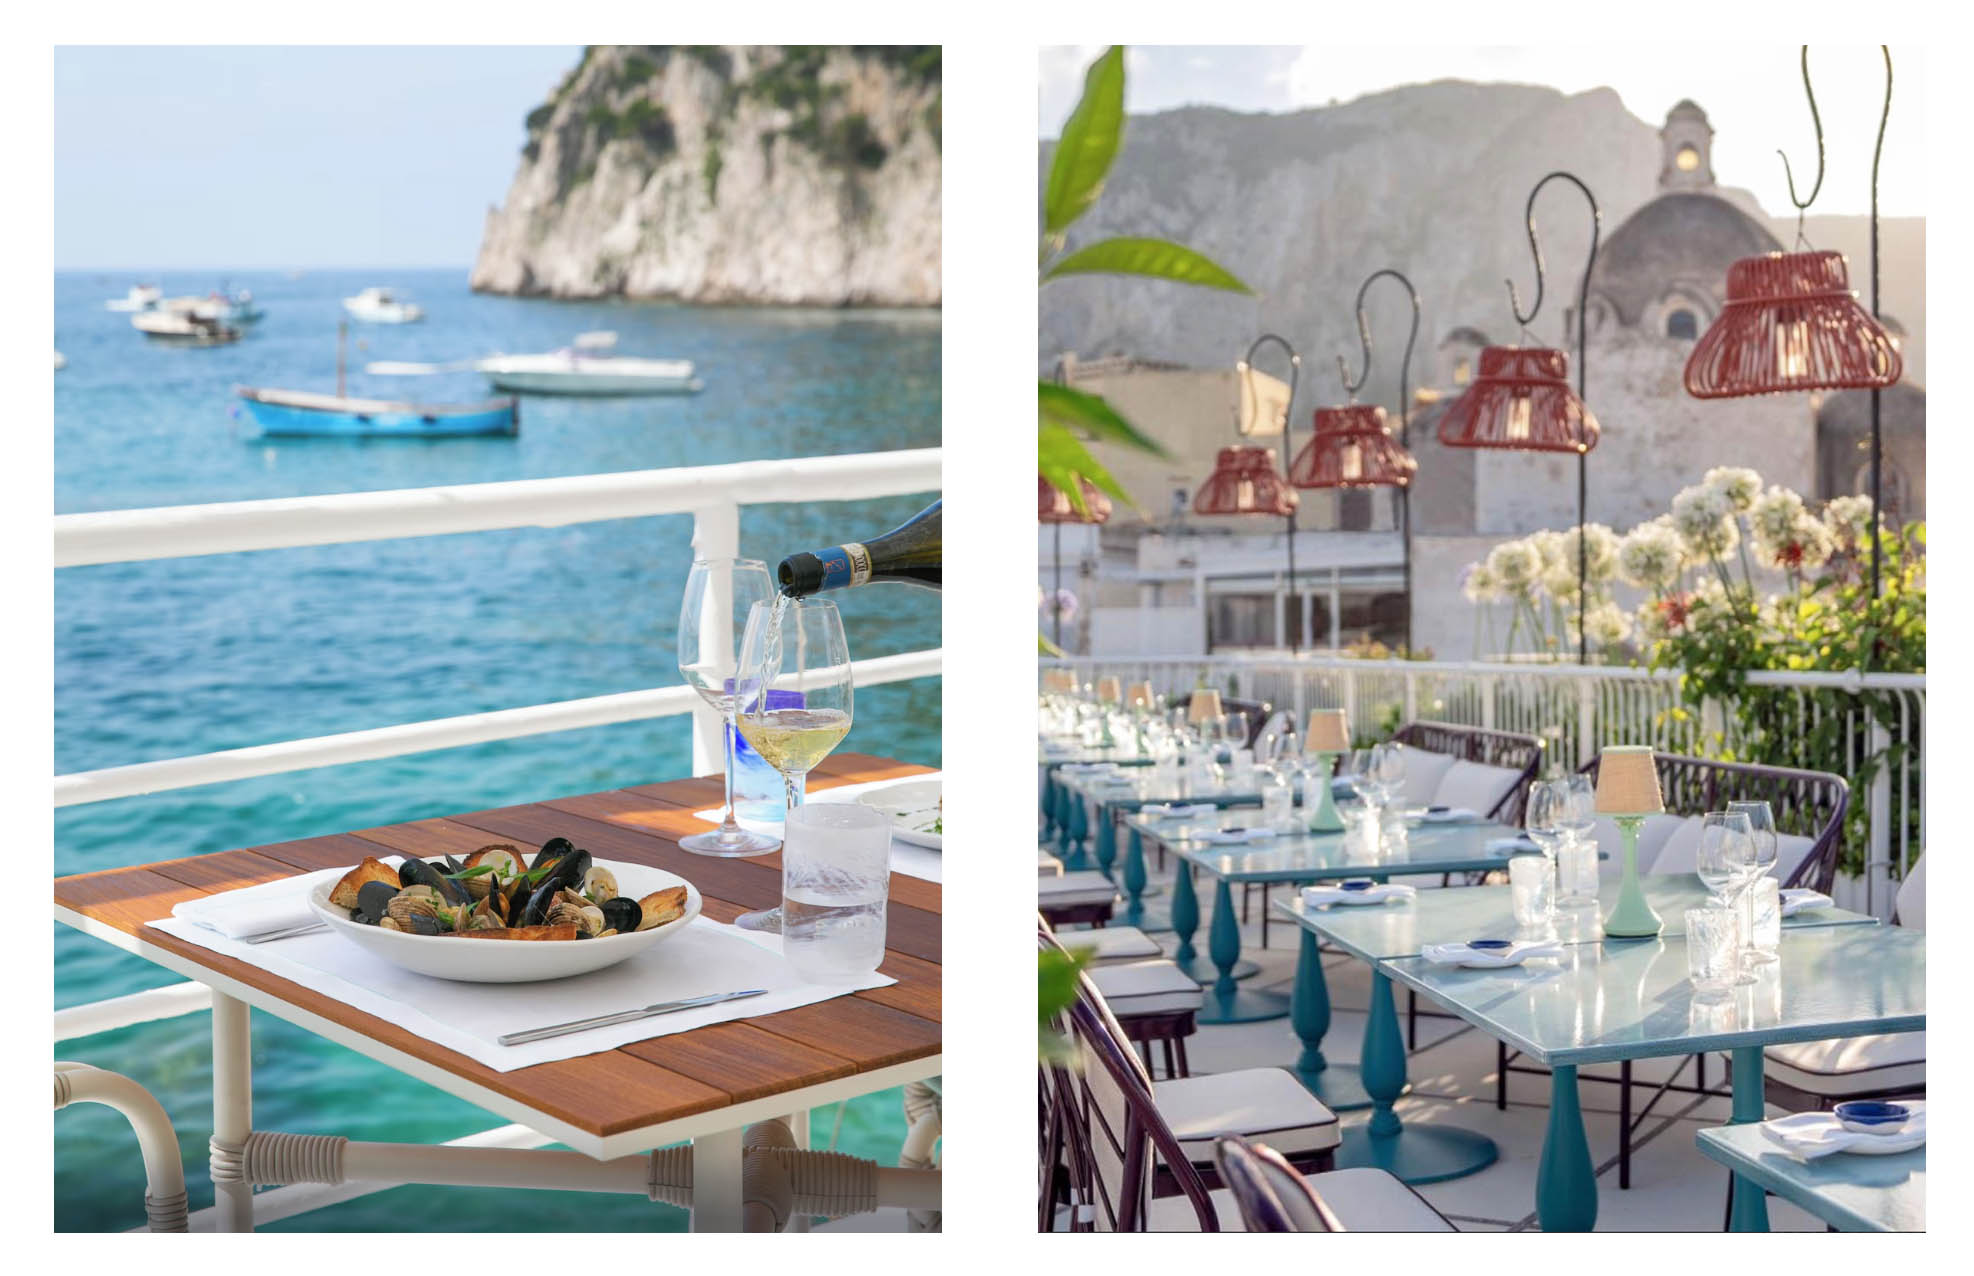 Palace Hôtel de luxe sur l'île de Capri en Italie